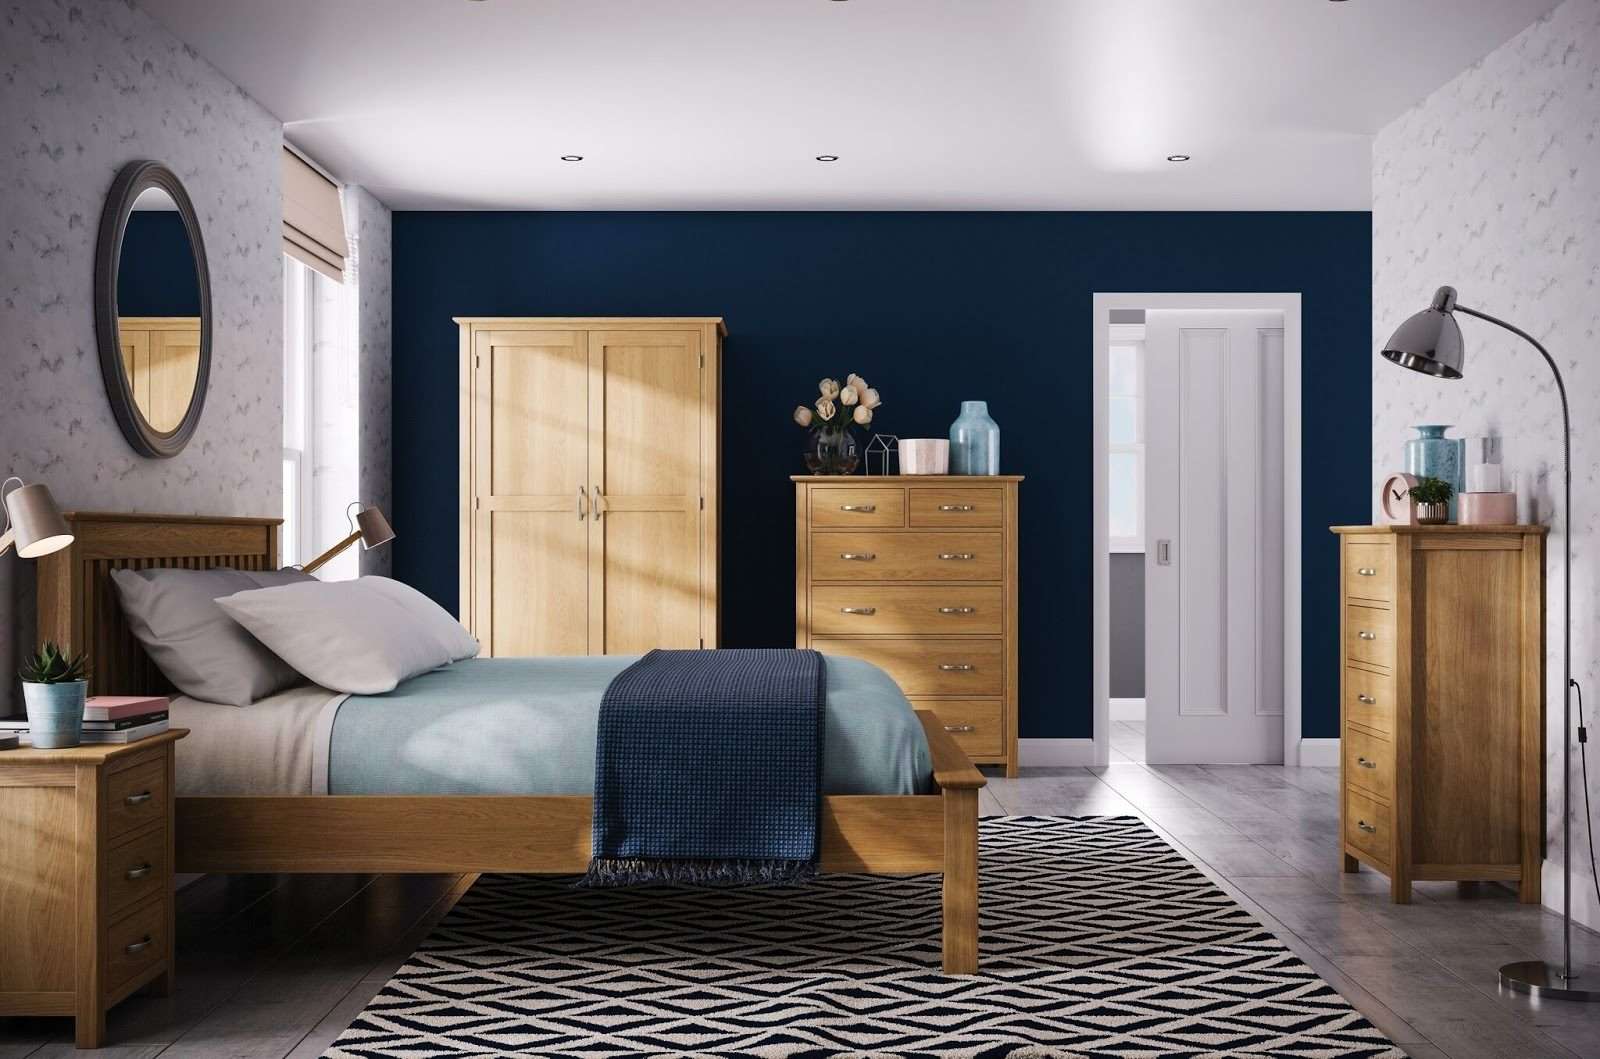 Kết hợp màu tường và nội thất làm căn phòng ngủ nhỏ trở nên đơn giản và đẹp